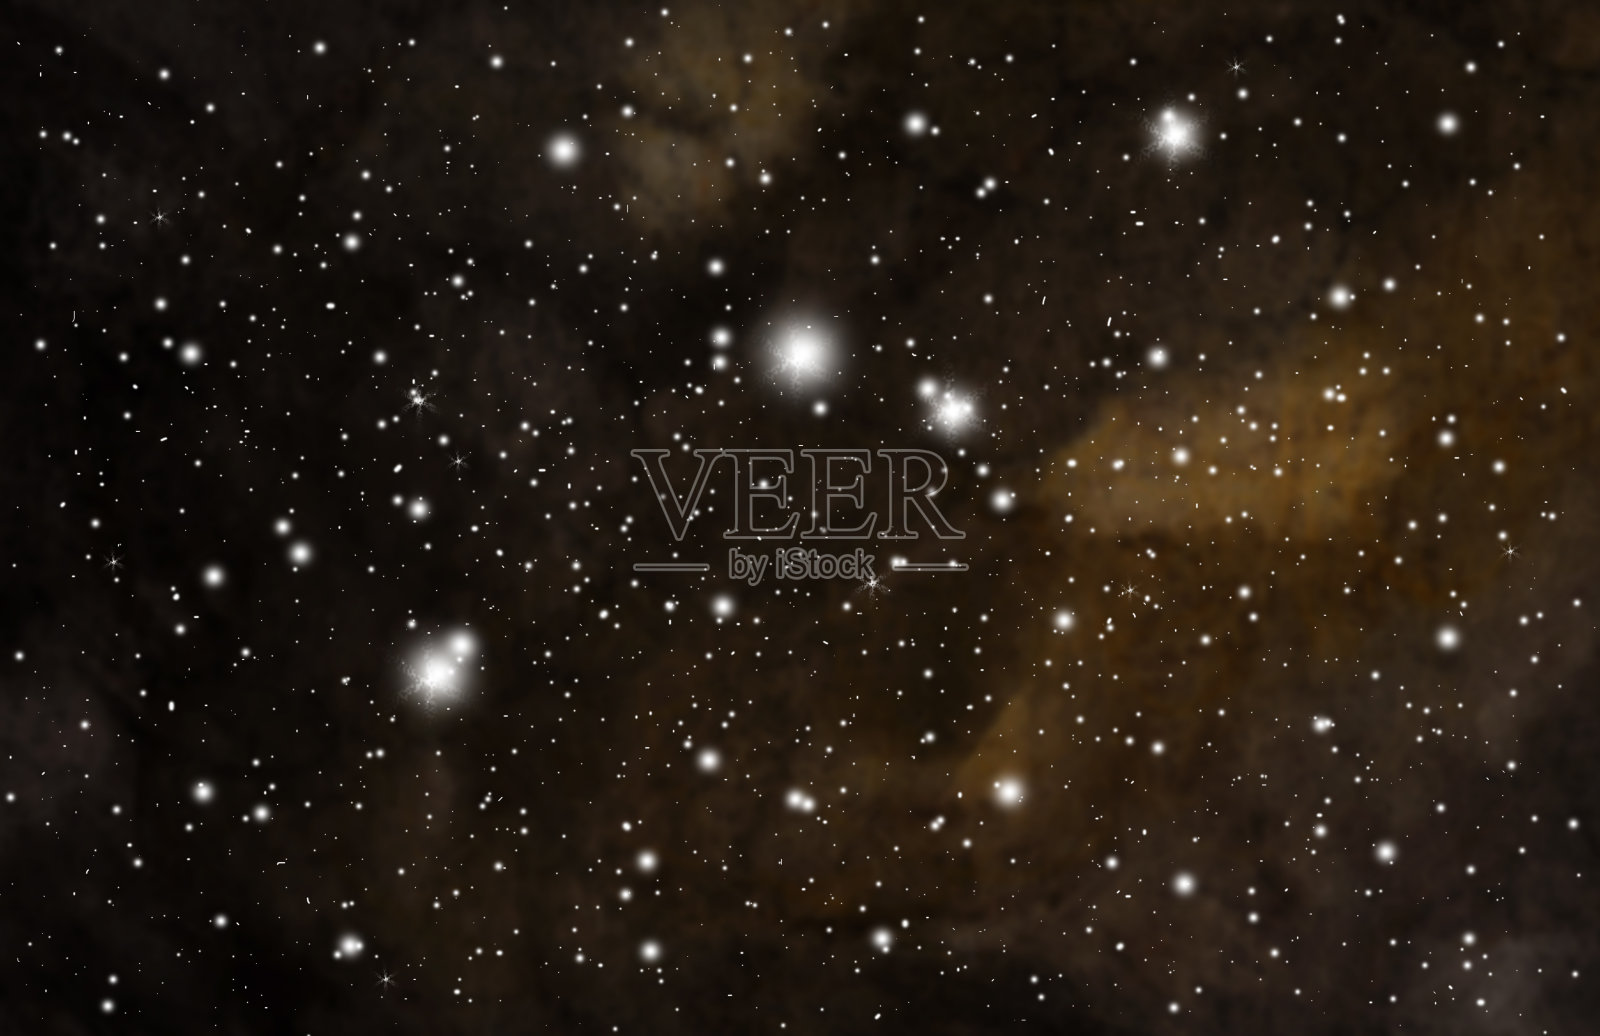 星星和星系空间夜空背景插画图片素材